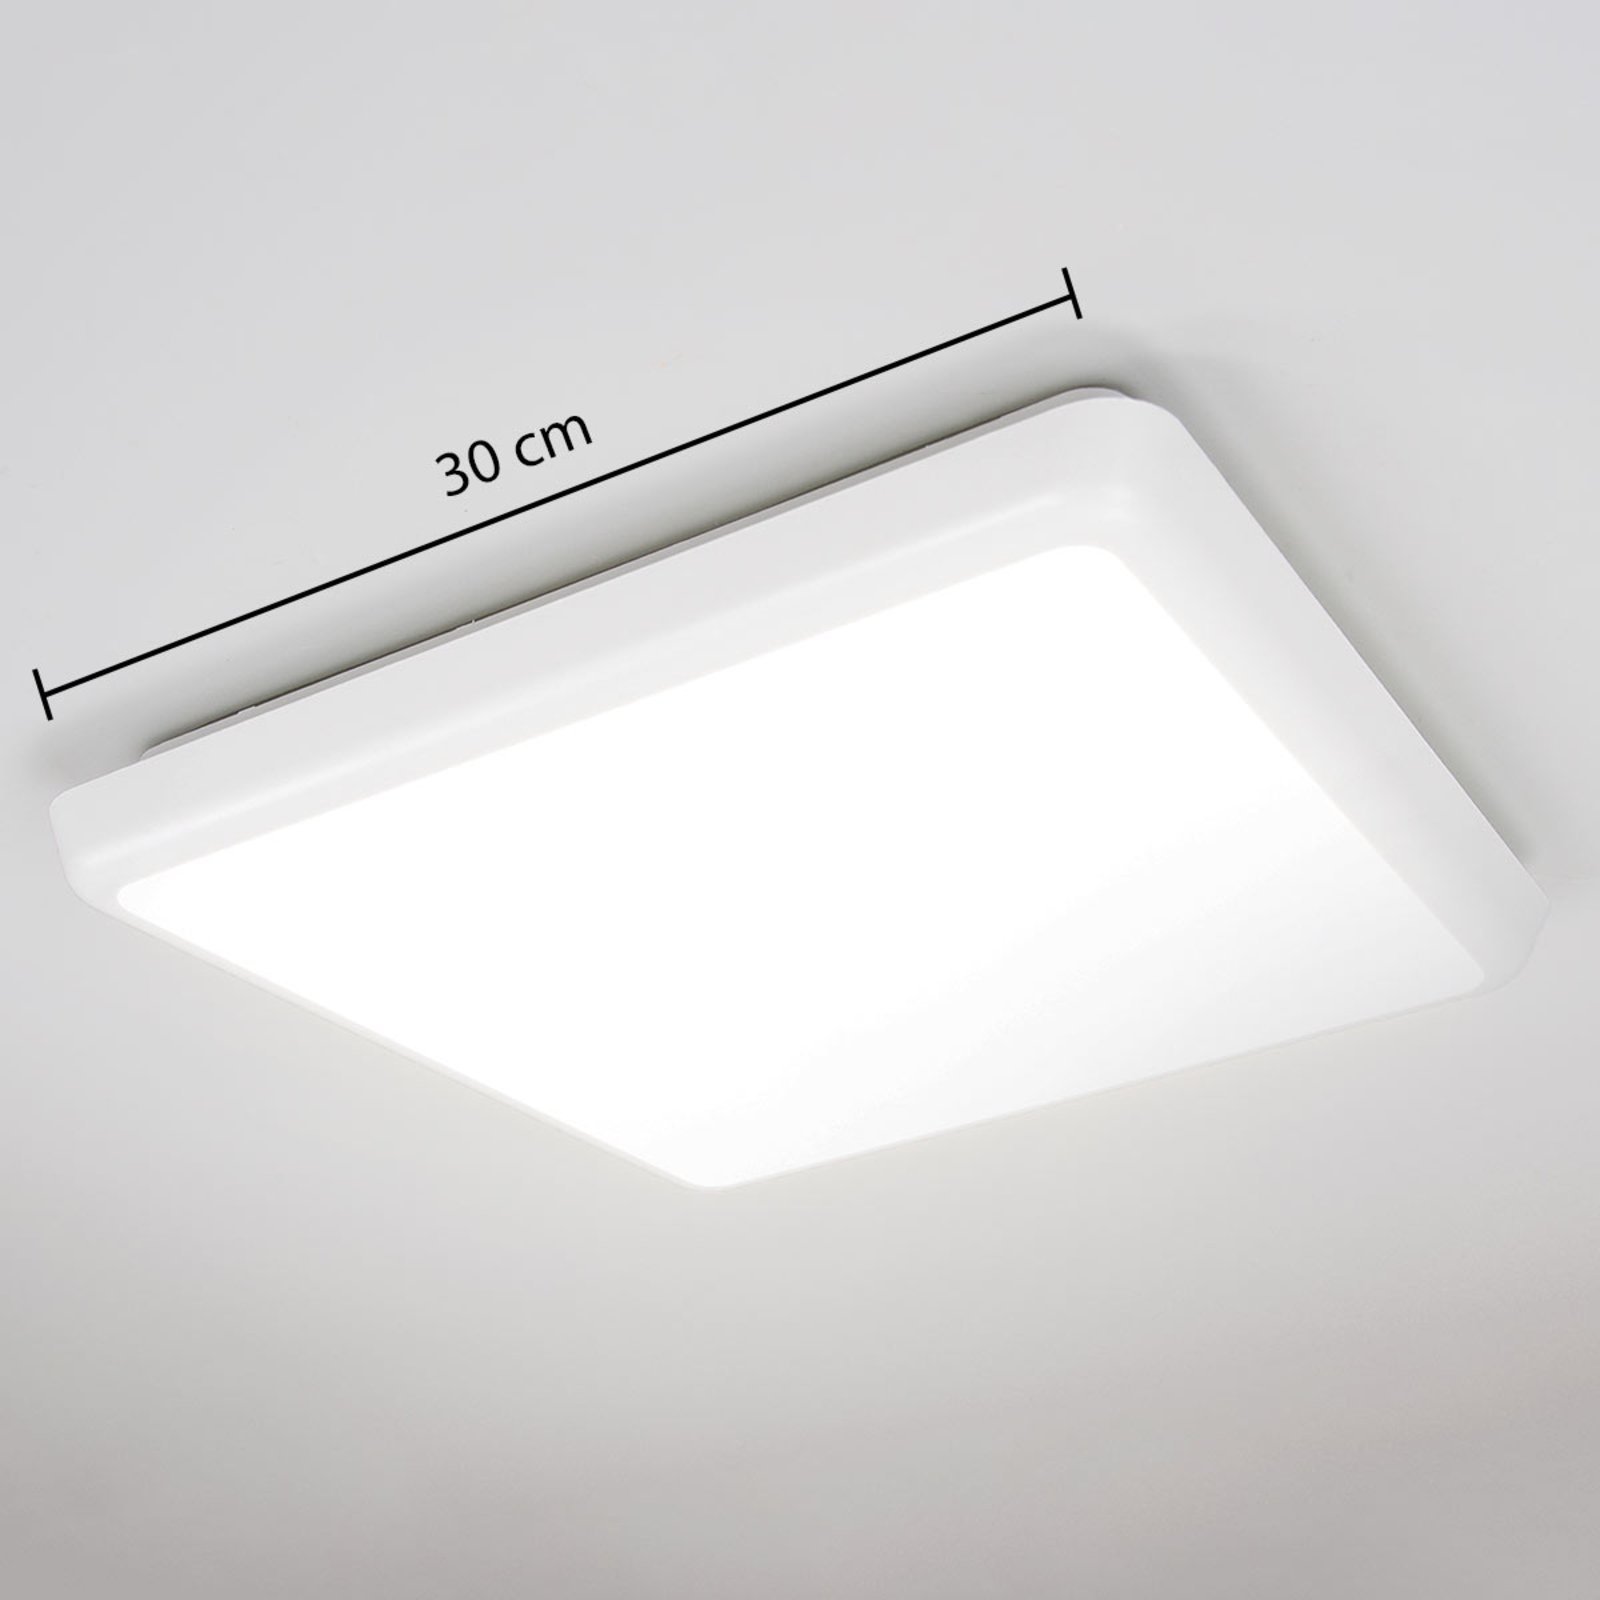 LED ceiling light Augustin, angular, 30 x 30 cm